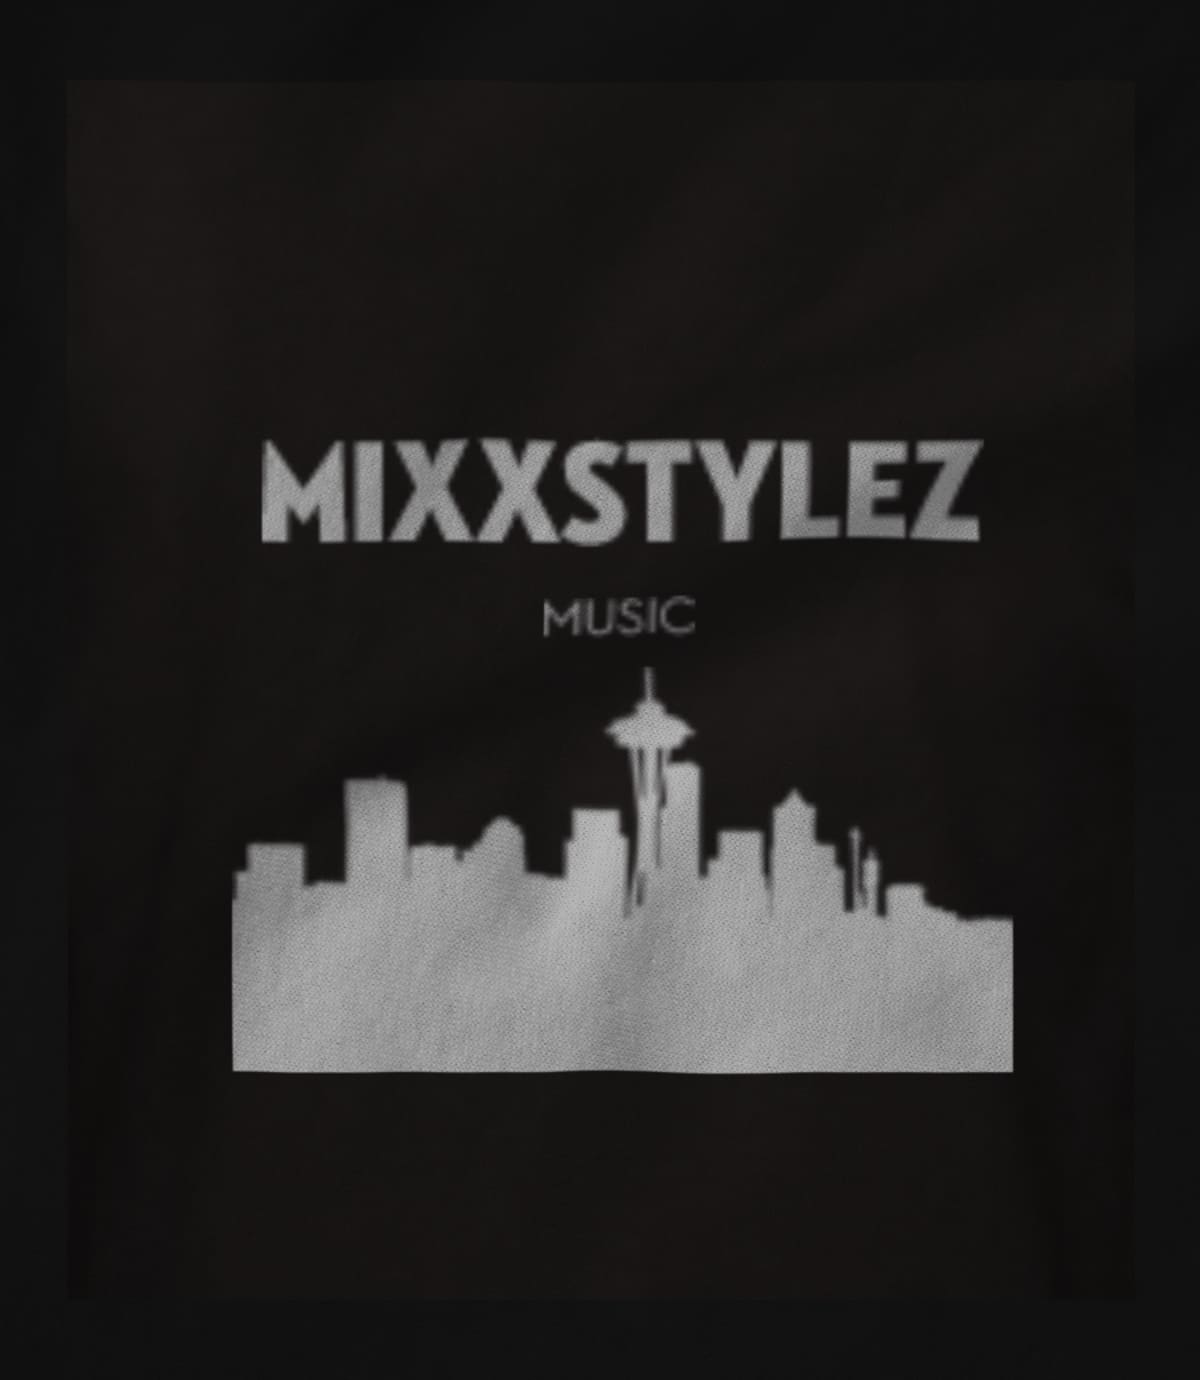 Mixxstylez